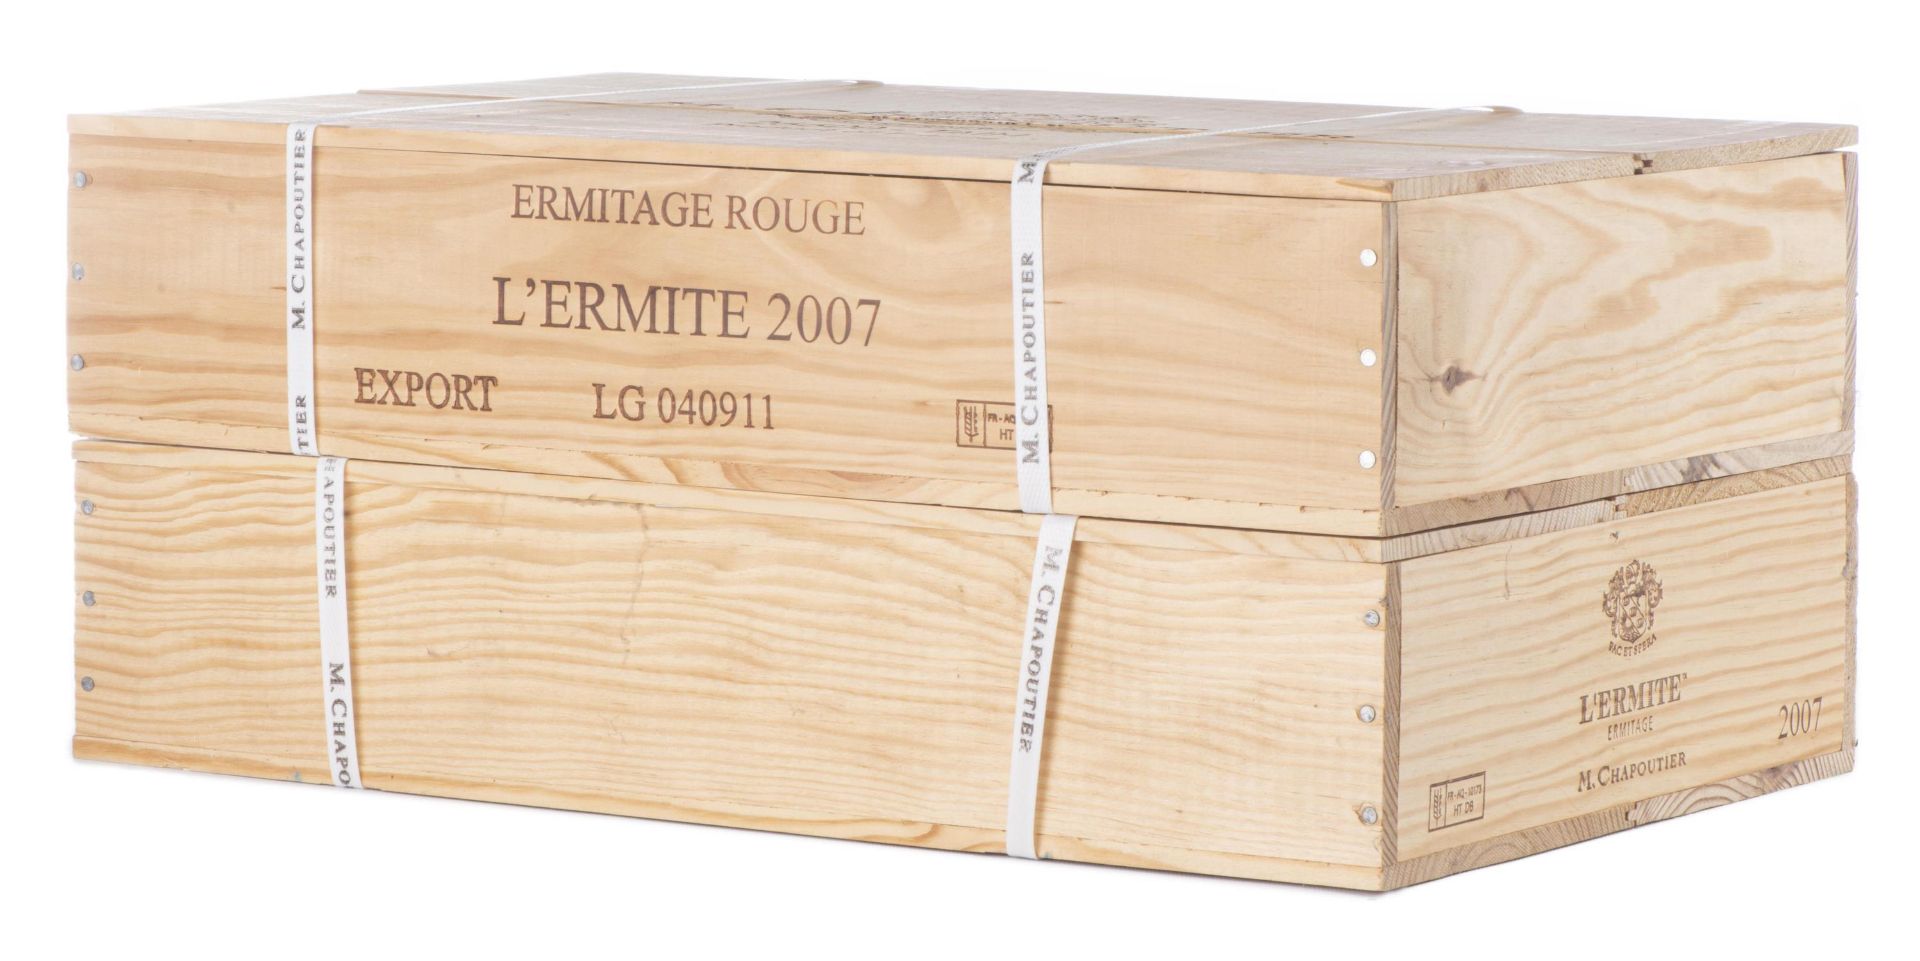 M. Chapoutier, Ermitage «L’Ermite», 2007